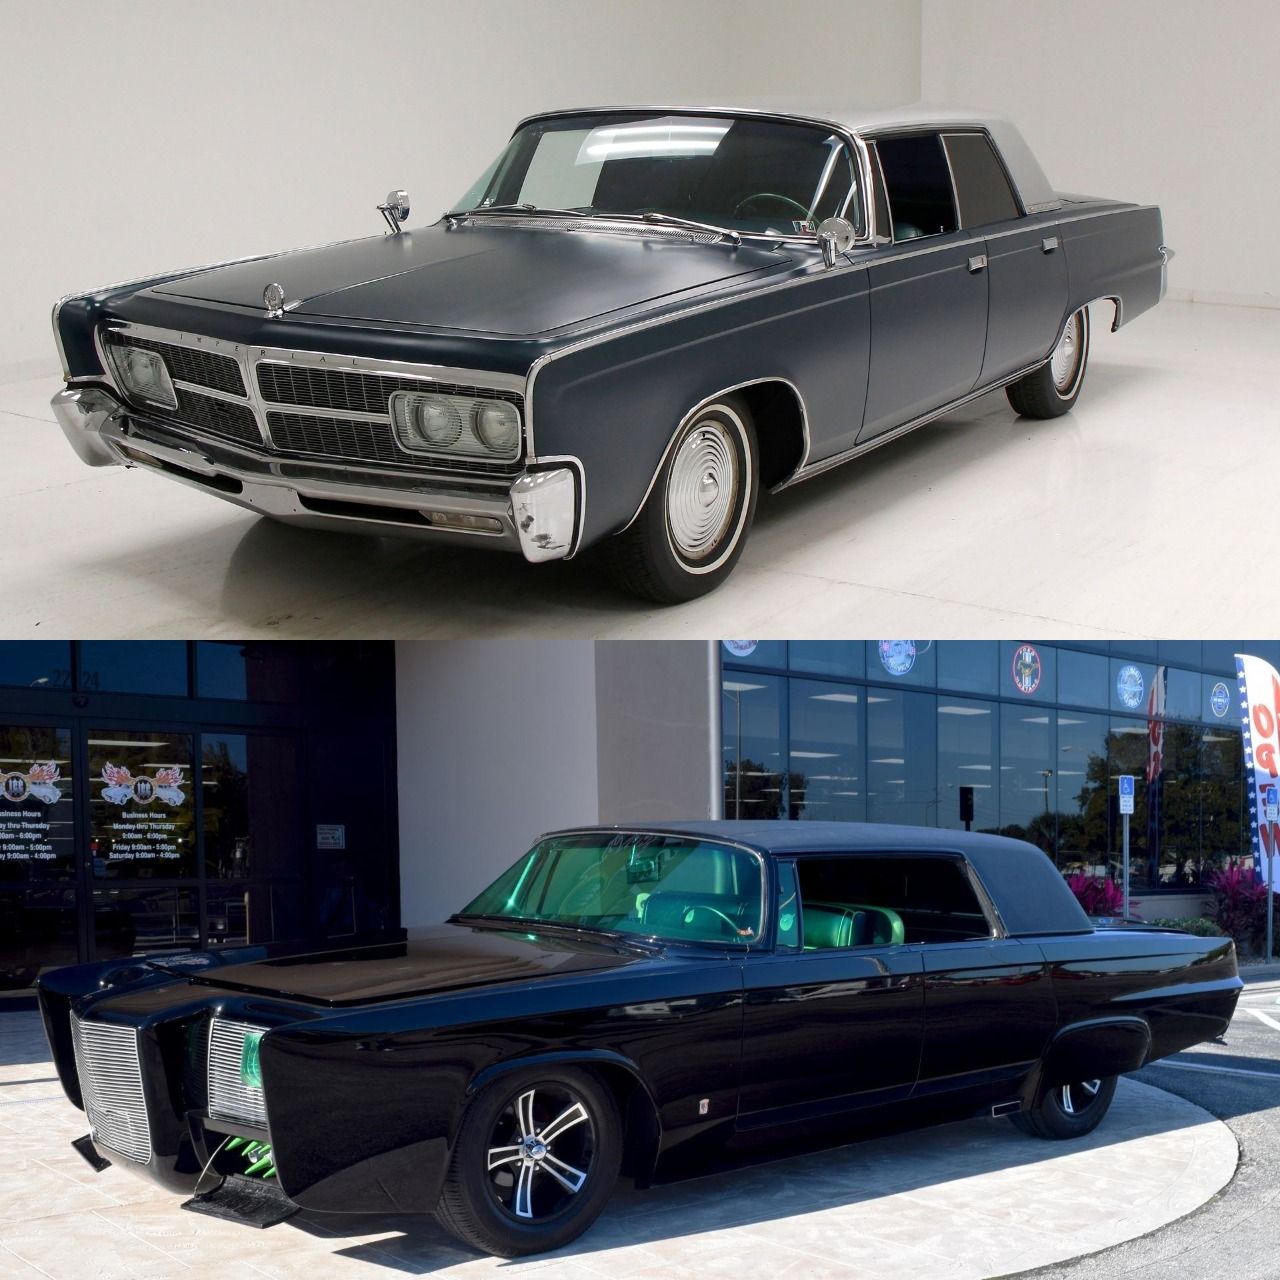 Imperial 1966 Chrysler vs Black beauty